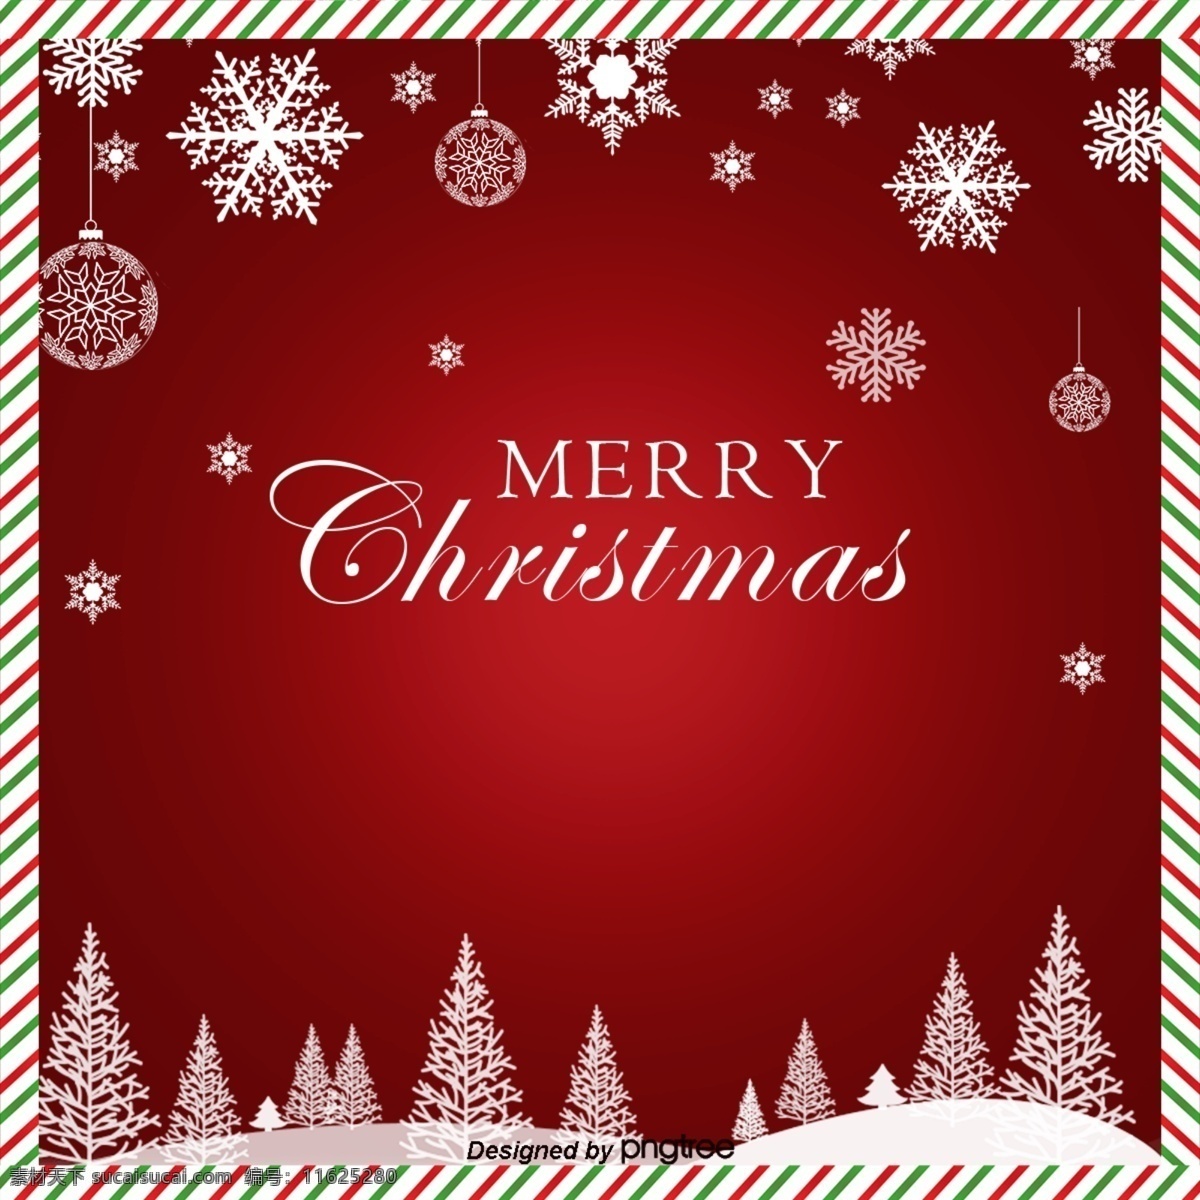 雪 红 信 圣诞 圣诞快乐 背景 红色 明星 这里 纸 卡片 可爱 圣诞节 星 树